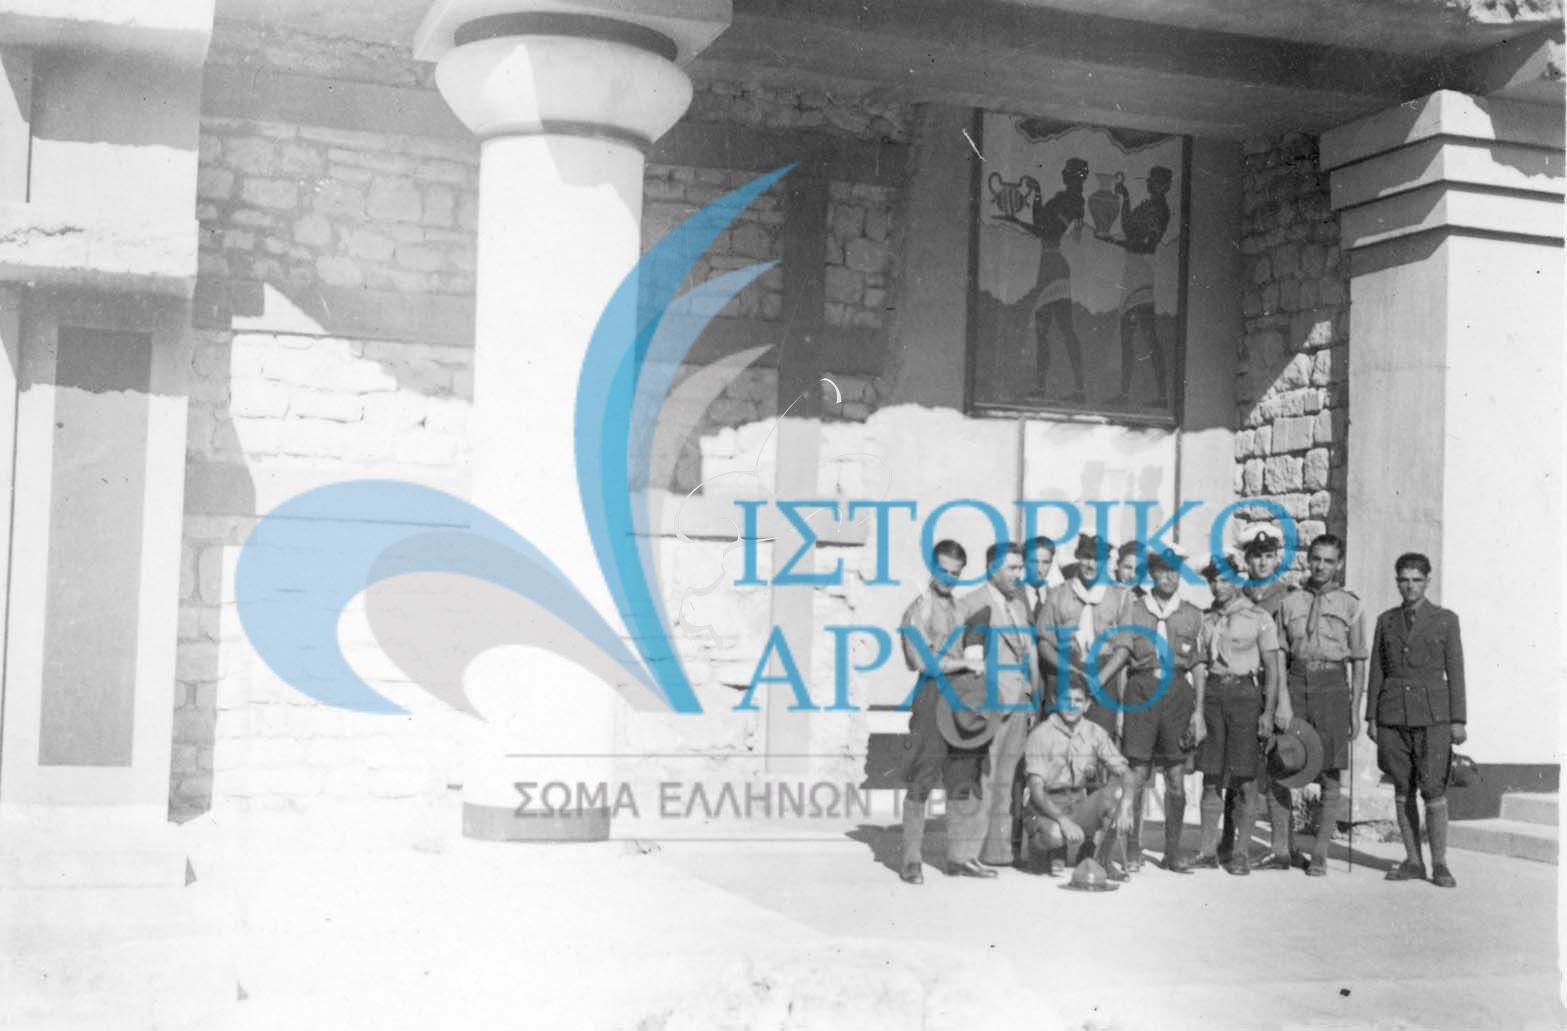 Η 1η περίοδος της 2ης Σχολής Φοινίκων σε εκδρομή στον Αρχαιολογικό Χώρο Κνωσσού το 1937. Αρχηγός Τξλ. Γκαζιάνης, υπαρχηγός Δ. Αλεξάτος